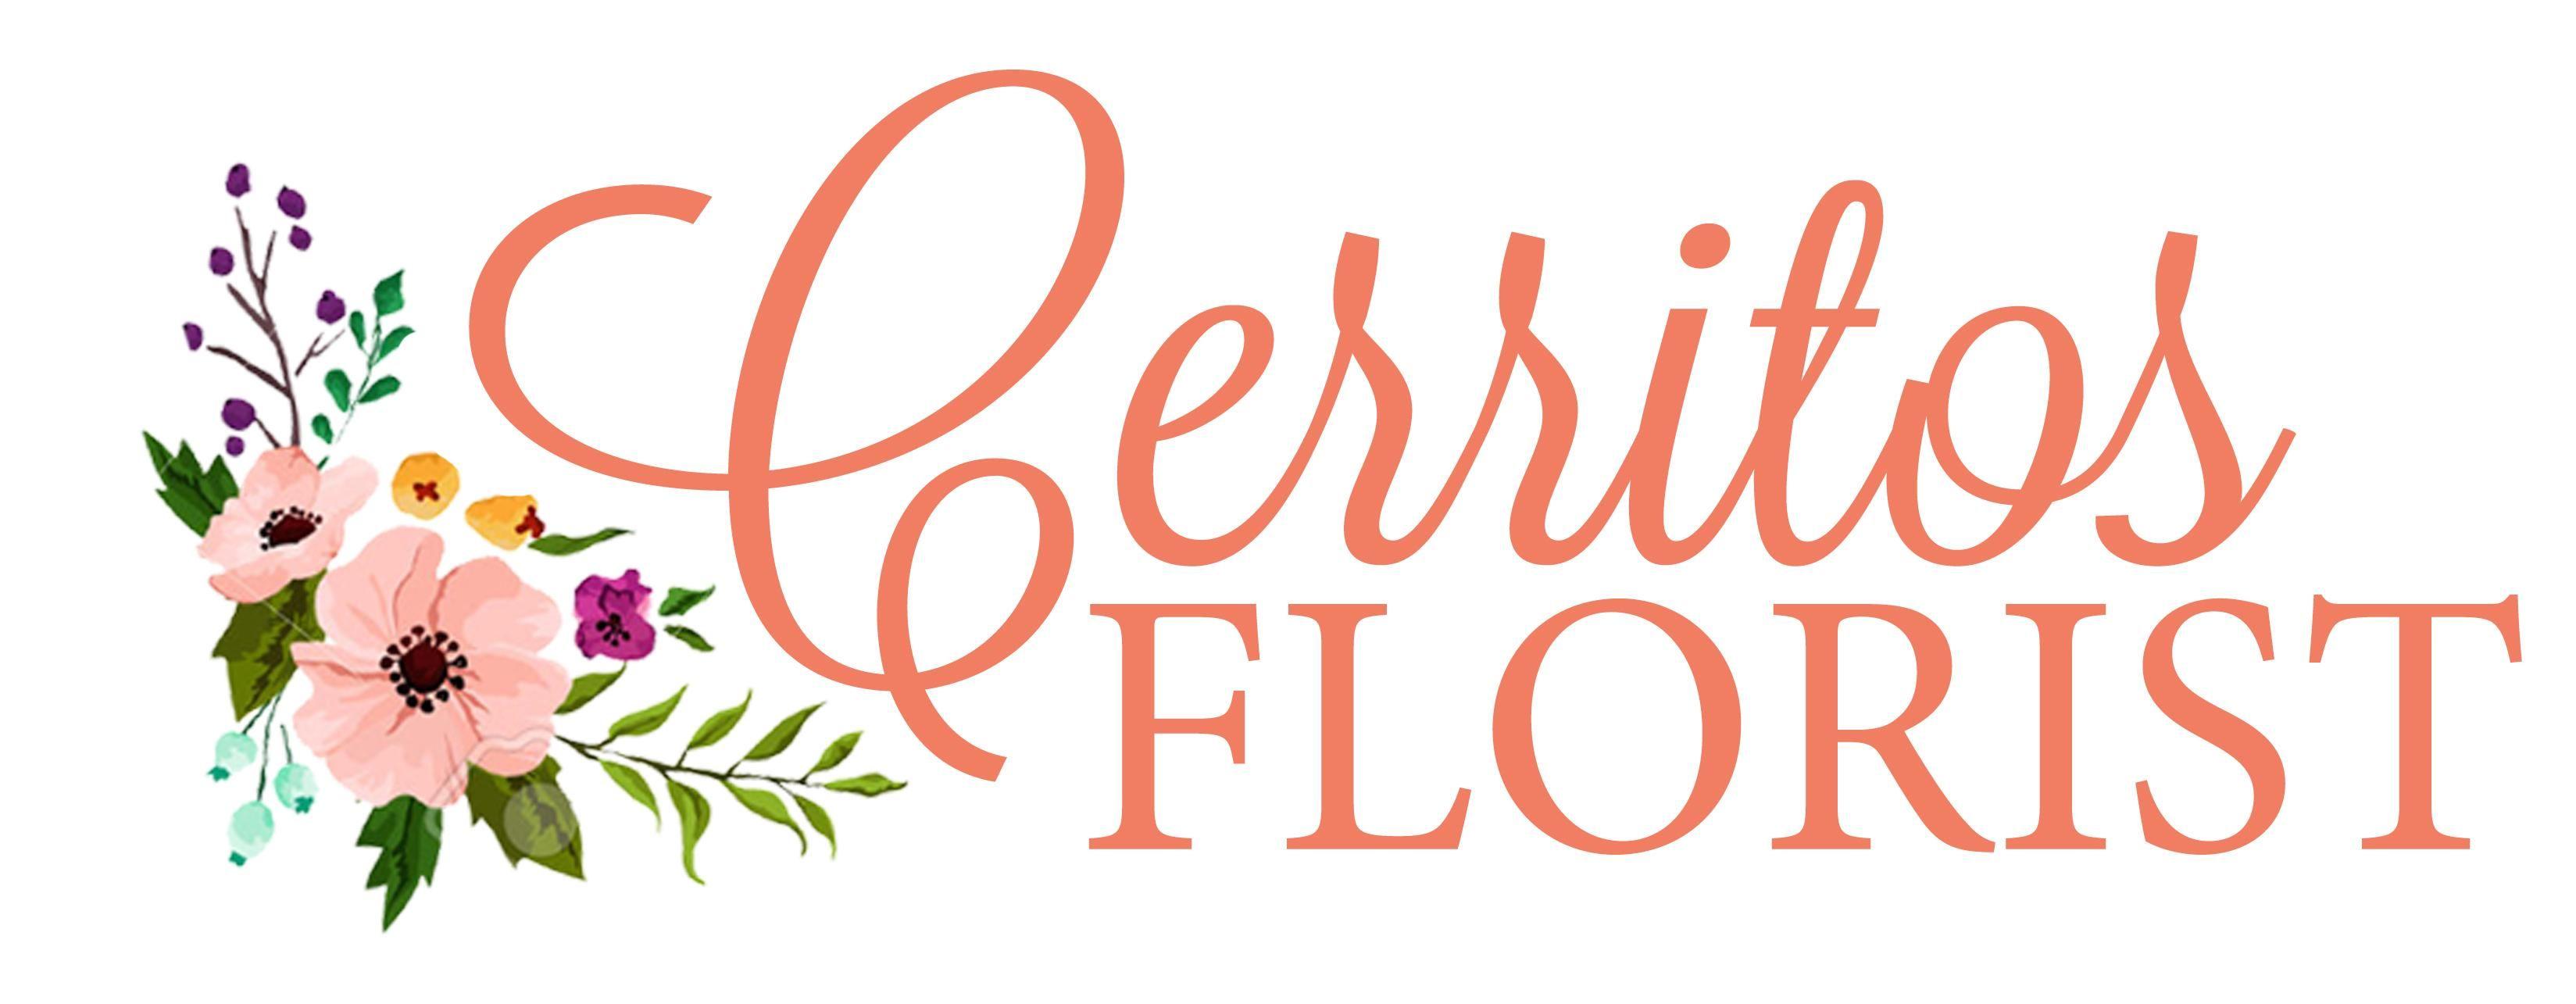 Flower Delivery Logo - Cerritos Florist. Flower Delivery